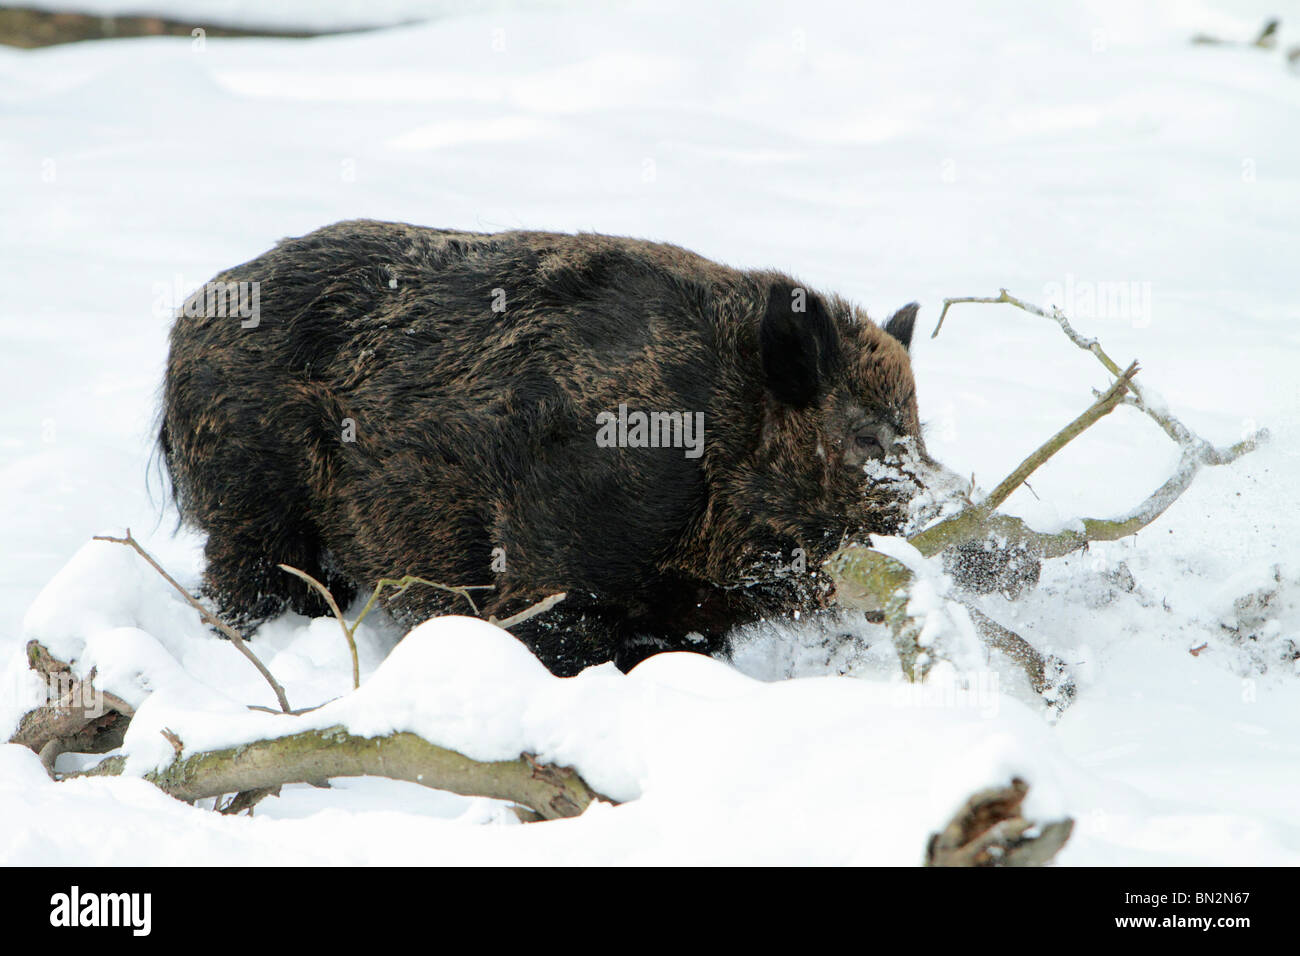 Cochon sauvage européenne, (Sus scrofa) mâle d'un animal ou d'un sanglier, à la recherche de nourriture dans la neige profonde, Allemagne Banque D'Images